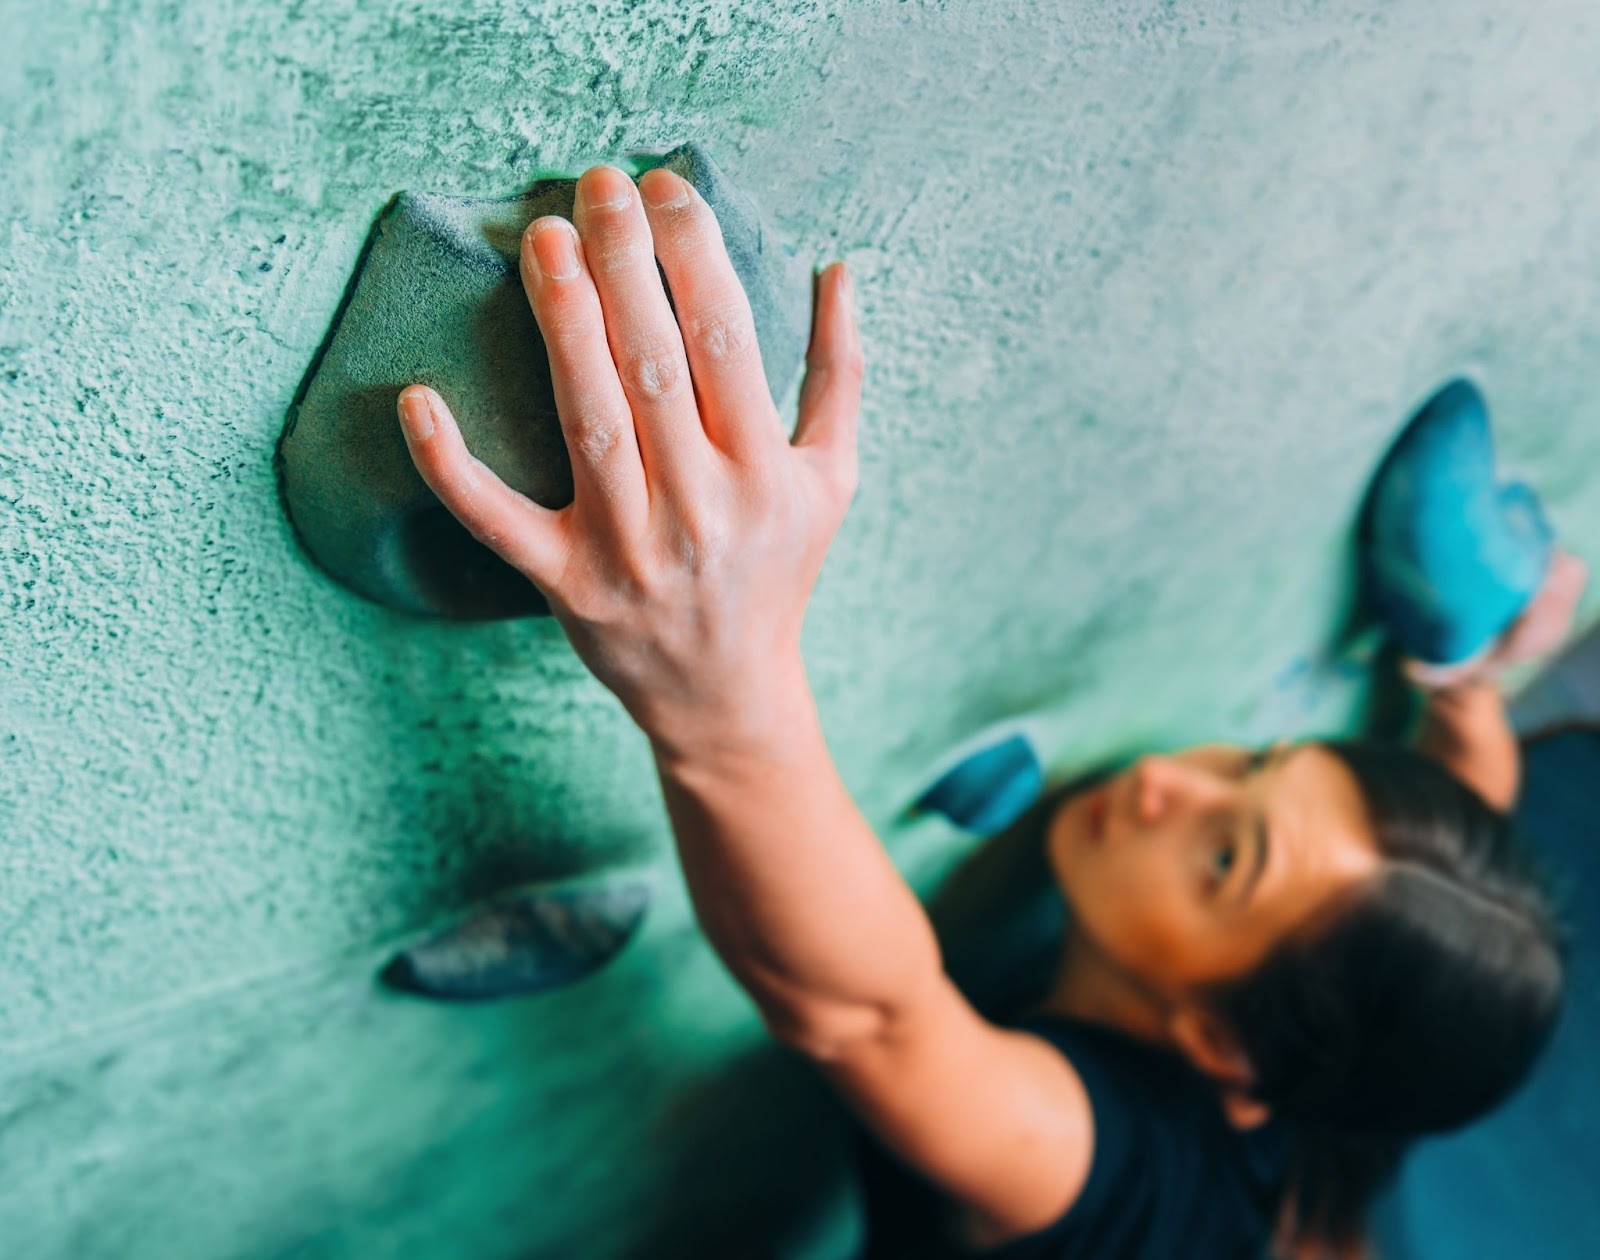 Mulher em um paredão de escalada, com sua mão direita em foco e o restante de seu corpo desfocado.